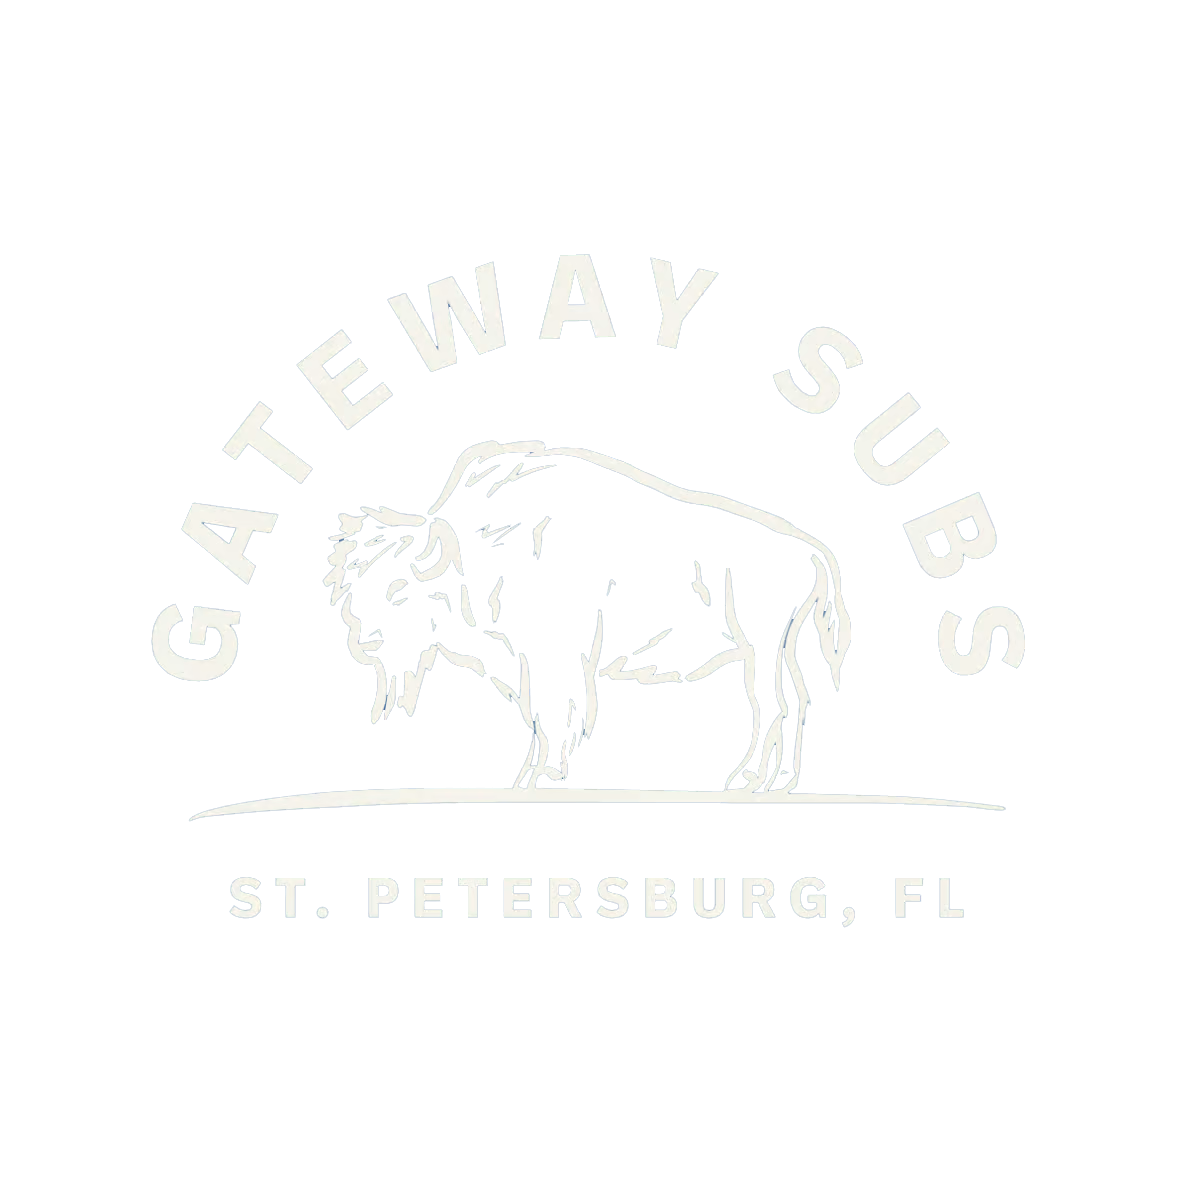 Gateway Subs logo